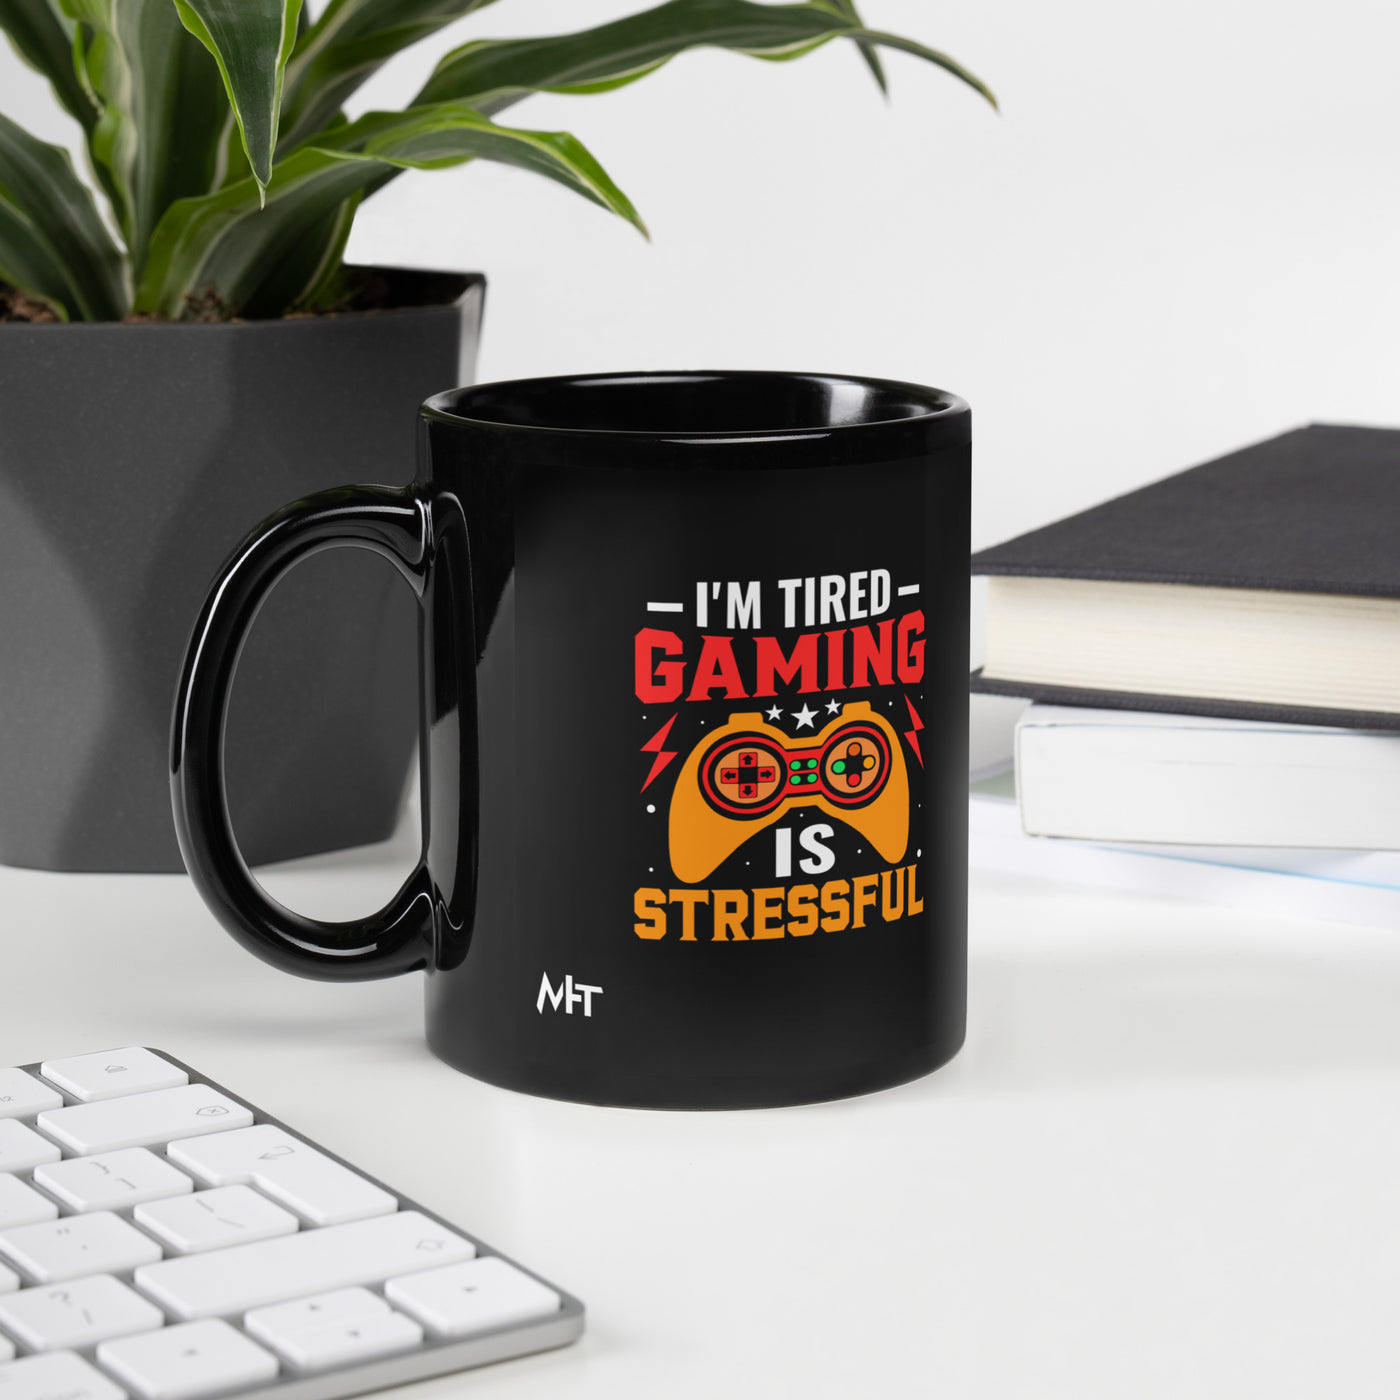 I'm Tired, Gaming is Stressful - Black Glossy Mug